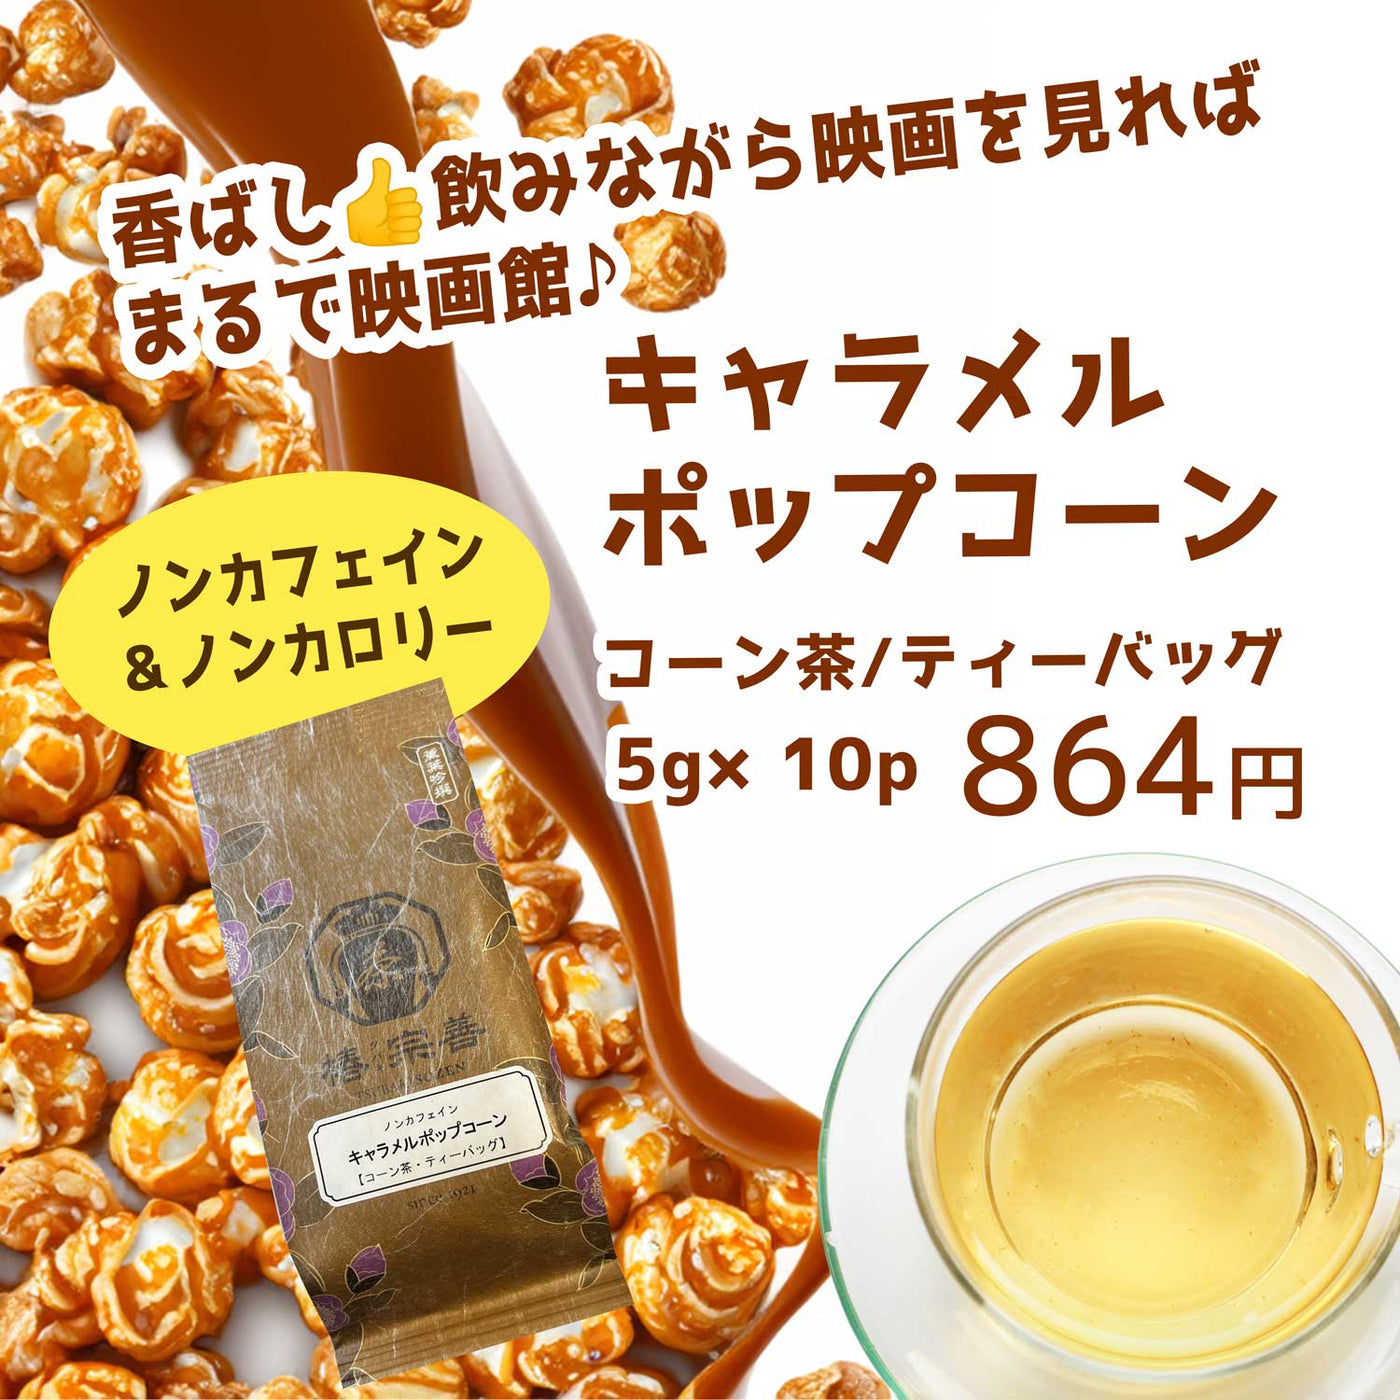 キャラメルポップコーン【コーン茶】 5g×10個